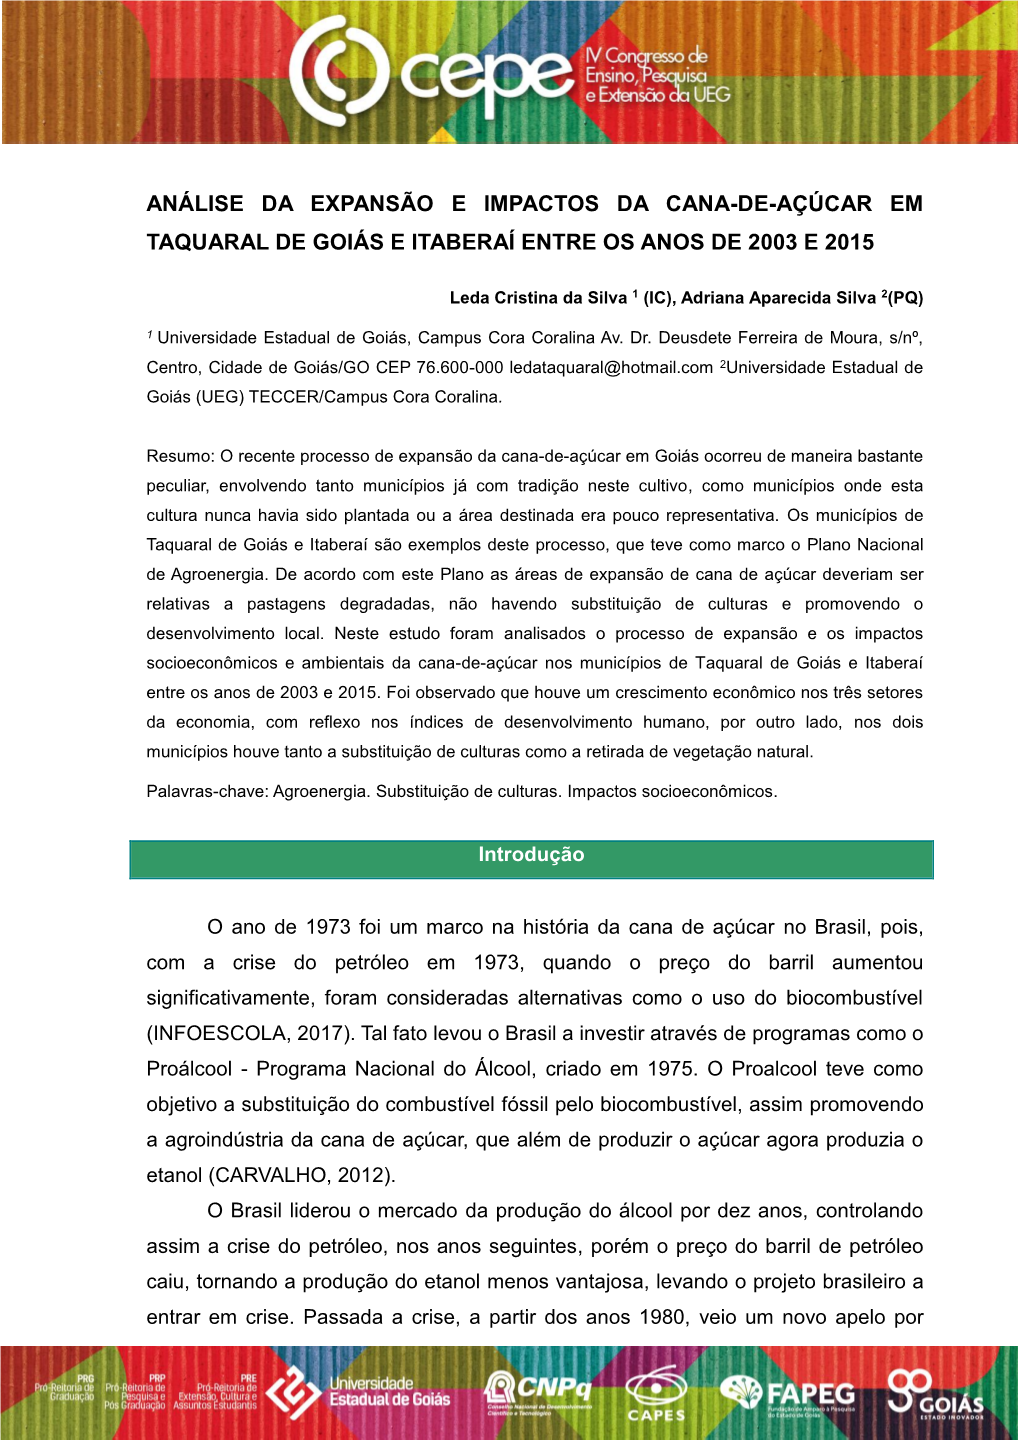 Análise Da Expansão E Impactos Da Cana-De-Açúcar Em Taquaral De Goiás E Itaberaí Entre Os Anos De 2003 E 2015